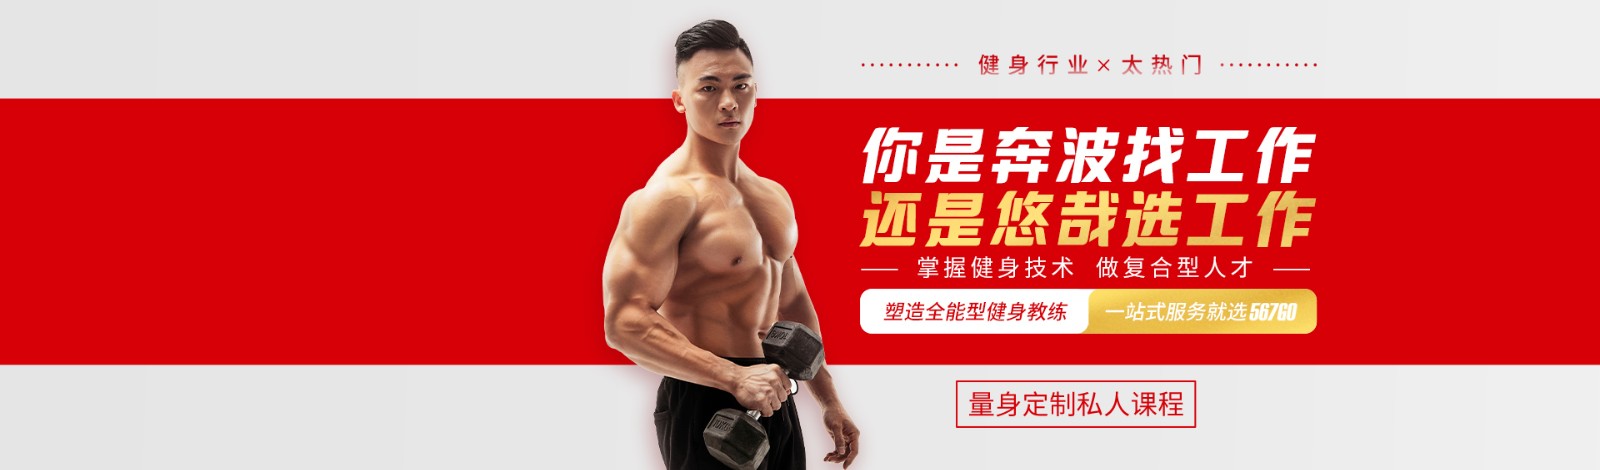 杭州567GO健身学院 横幅广告